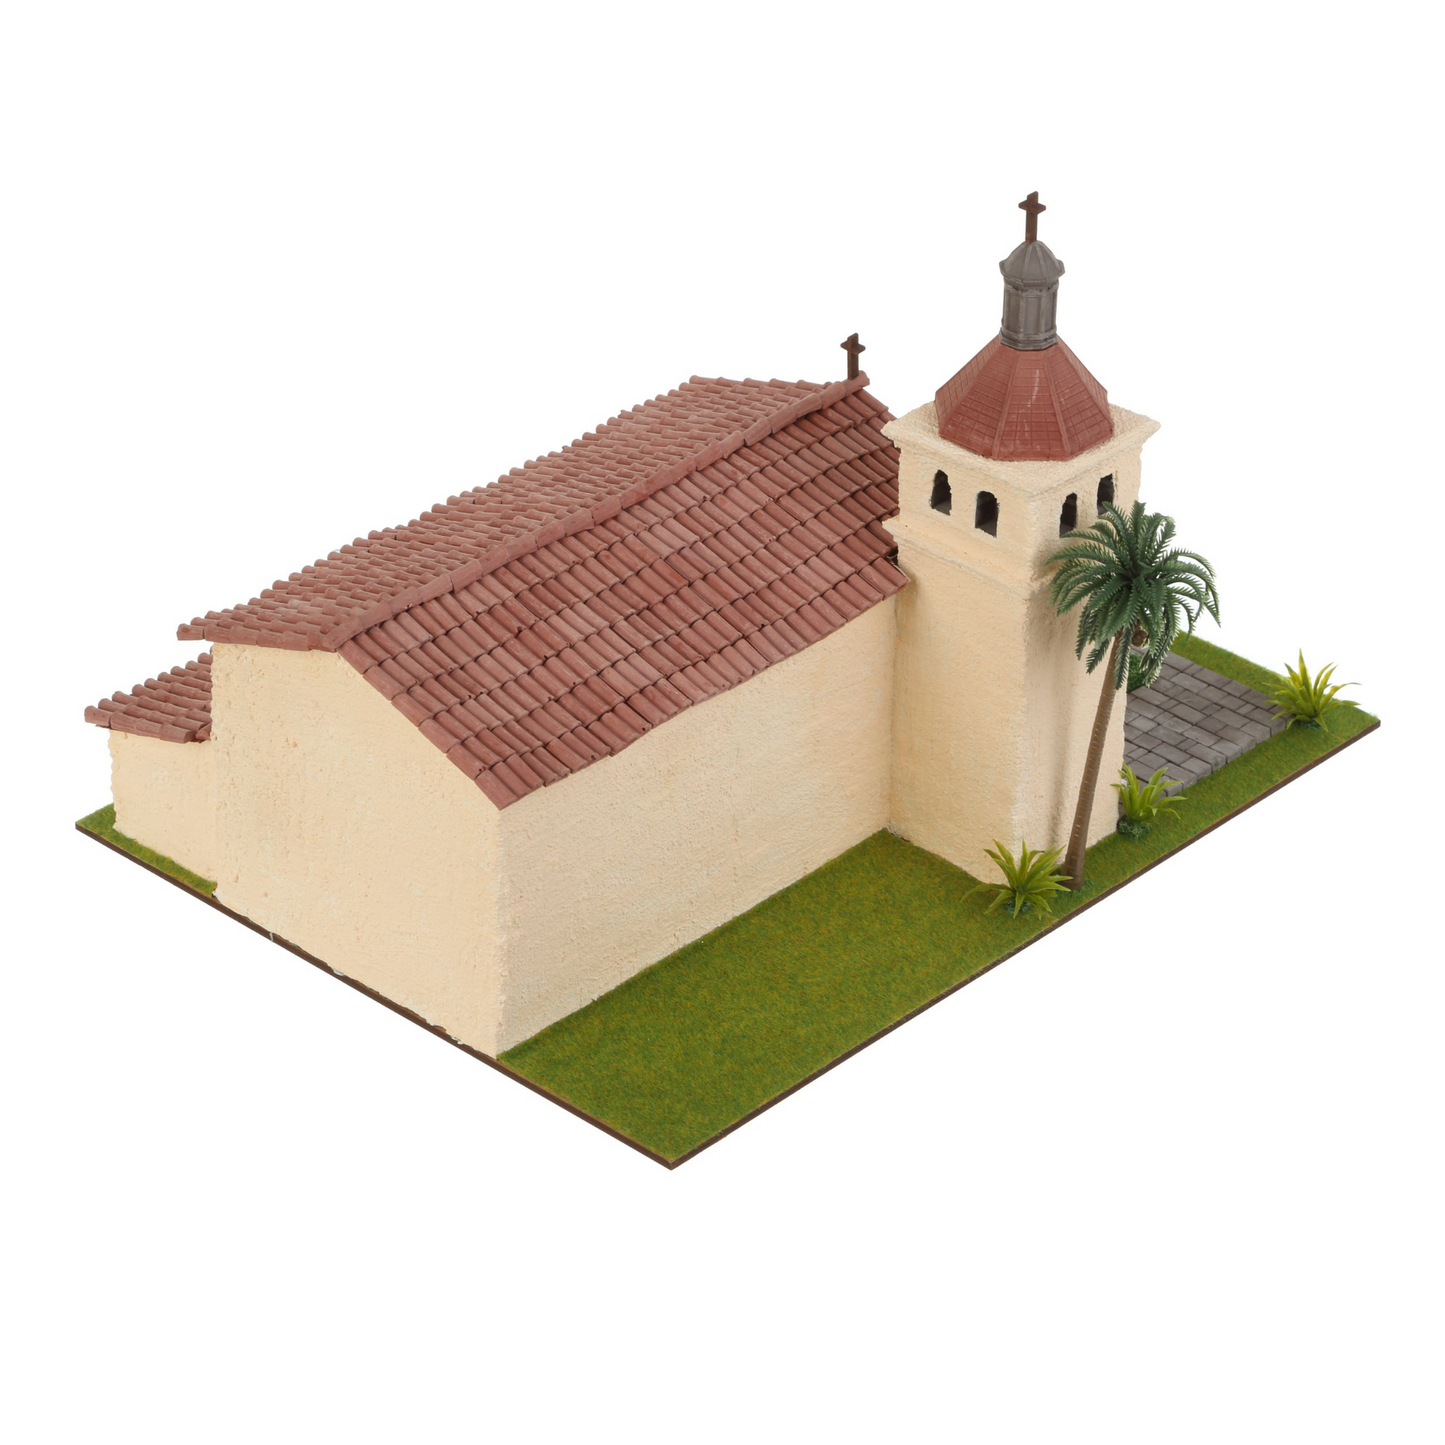 Mini bricks constructor set - Mission Santa Clara de As’s